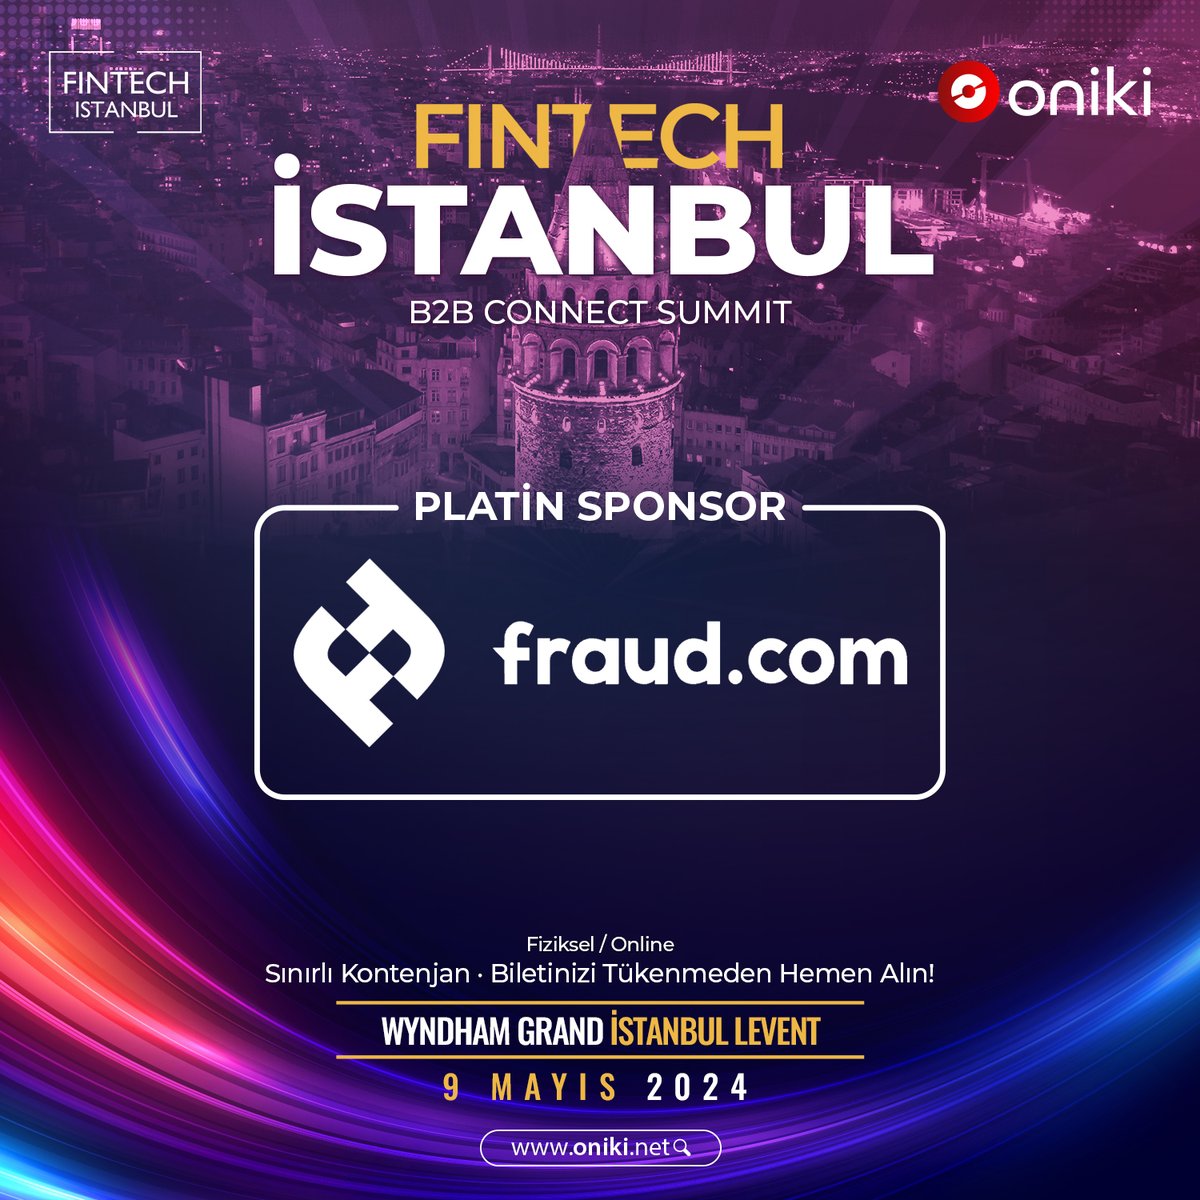 @oniki_net ve @fintech_istanbul İş Birliğinde; Fintech İstanbul B2B Connect Summit fraud.com‘un platin sponsorluğunda gerçekleşecek! 🥳 #oniki #fintech #fintechistanbul #FinTechIstanbulB2BConnectSummit #ftib2bconnectsummit